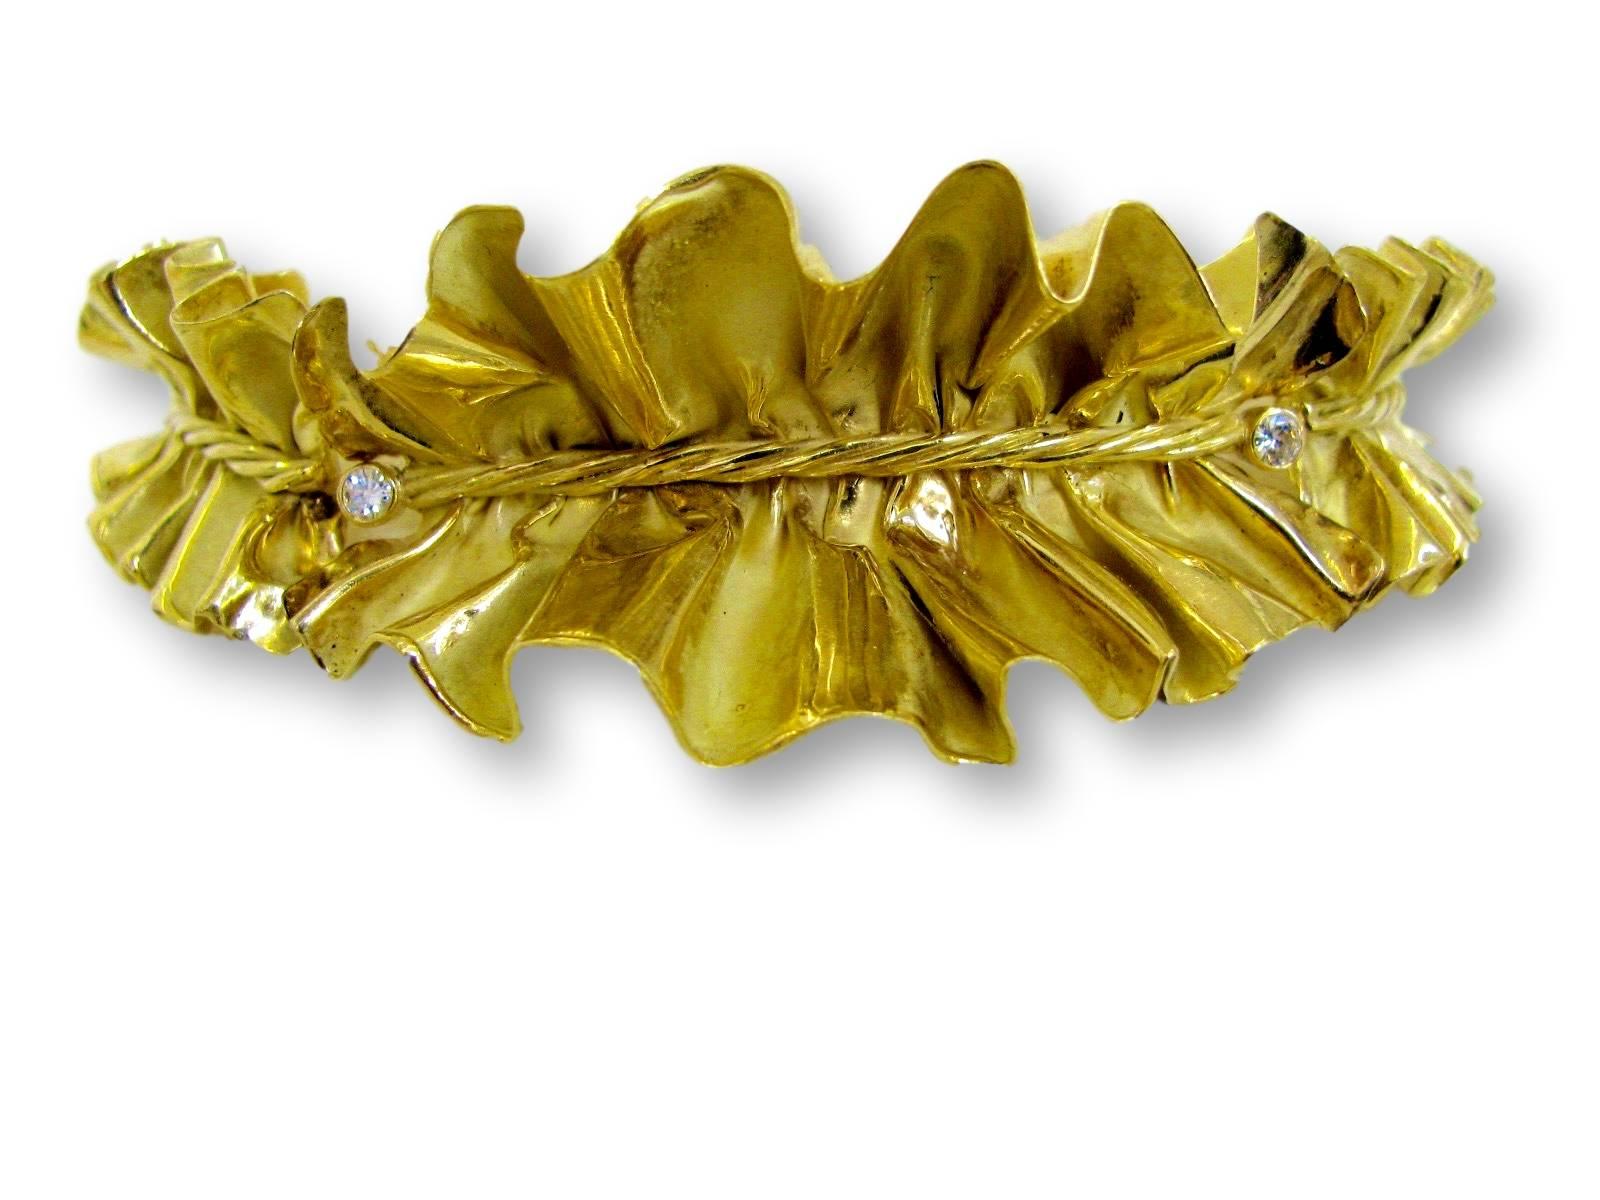 Anna Maria Cammilli handgefertigtes Goldcollier. Die Halskette im Stil einer Halskrause ist aus 18 Karat Gelbgold gefertigt und sowohl matt als auch hochglanzpoliert. Dieses fabelhafte Schmuckstück ist ein Frühwerk von Cammilli, die ihre ersten